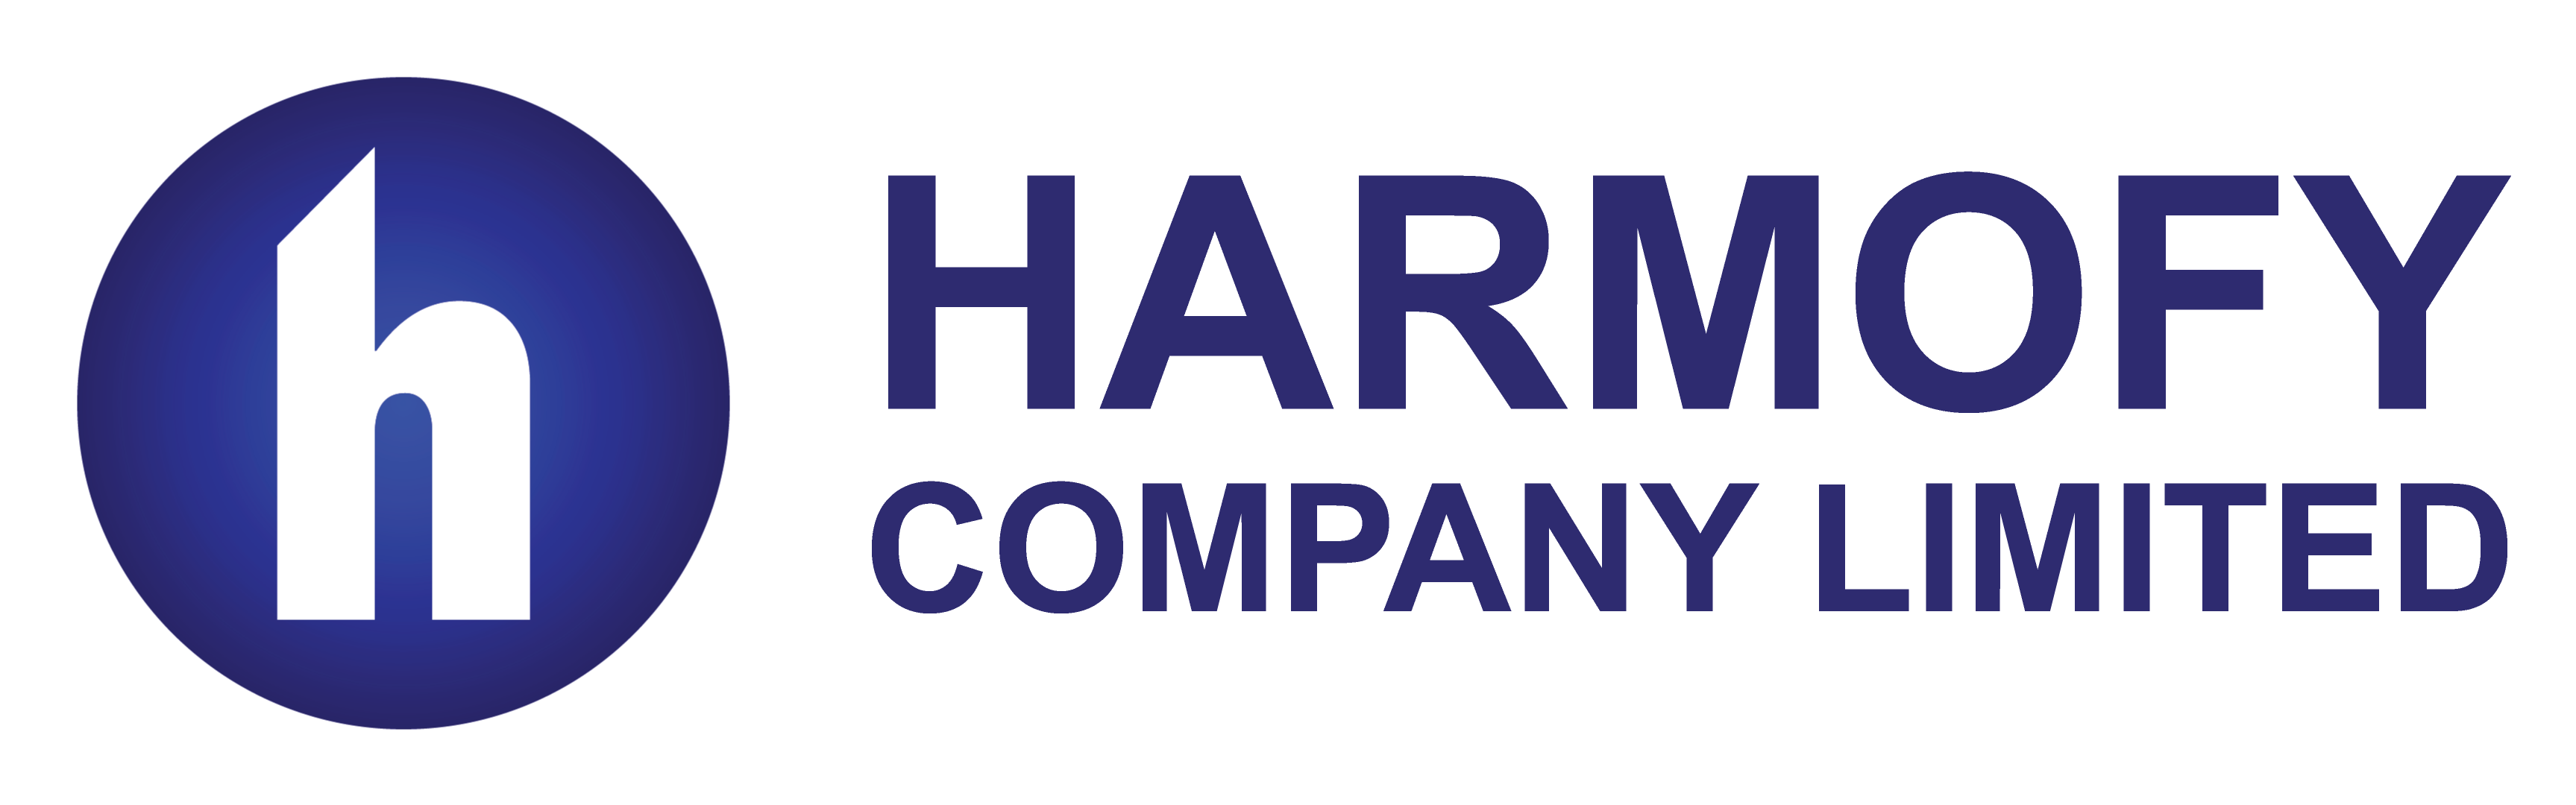 Harmofy Company